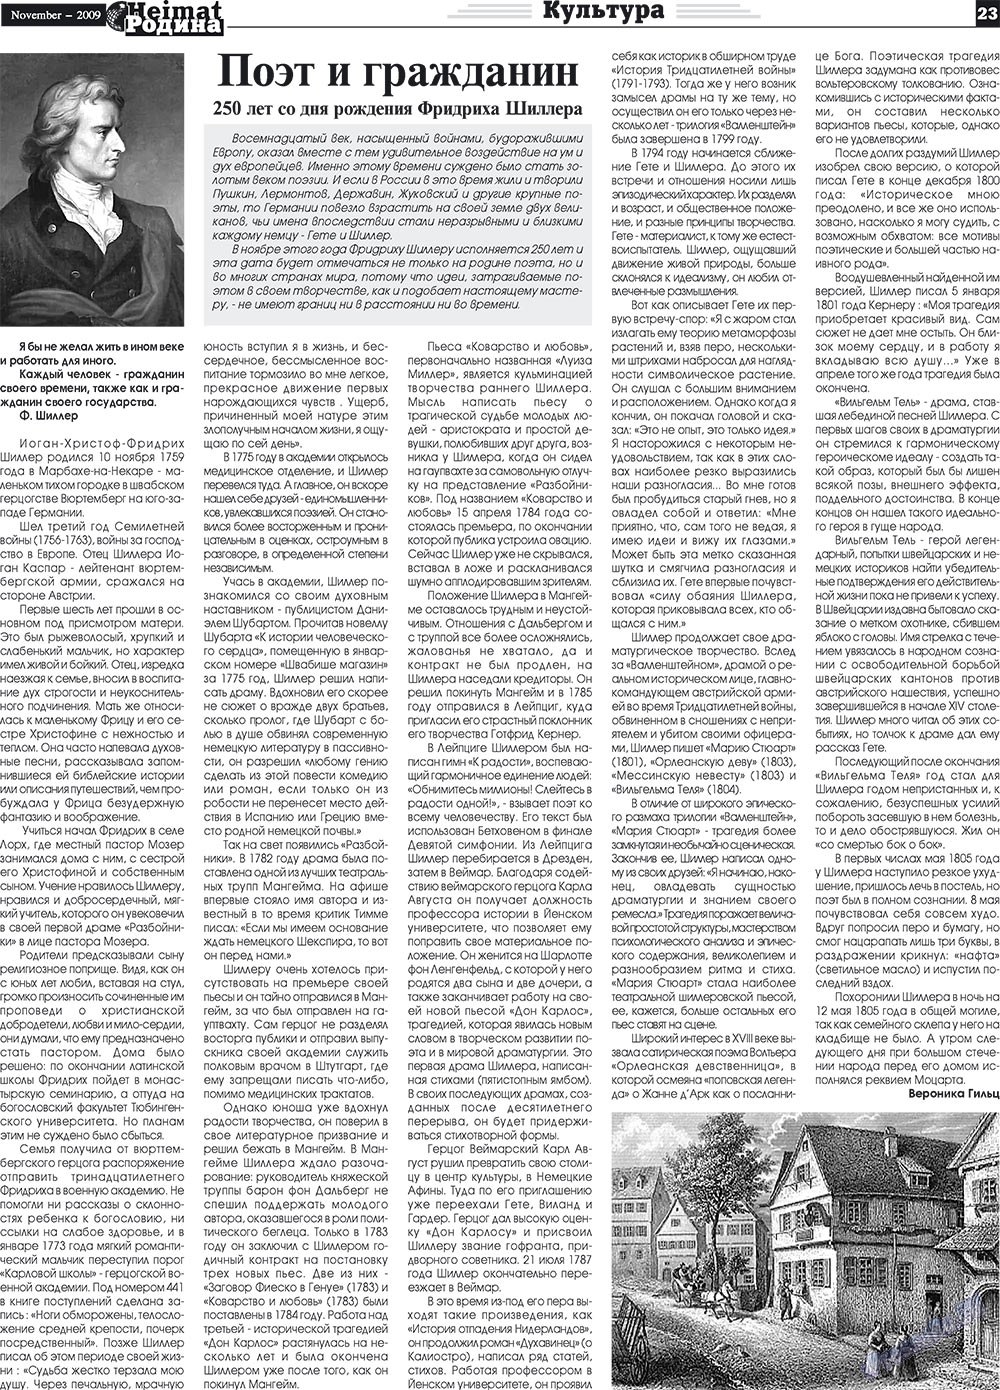 Heimat-Родина (газета). 2009 год, номер 11, стр. 23